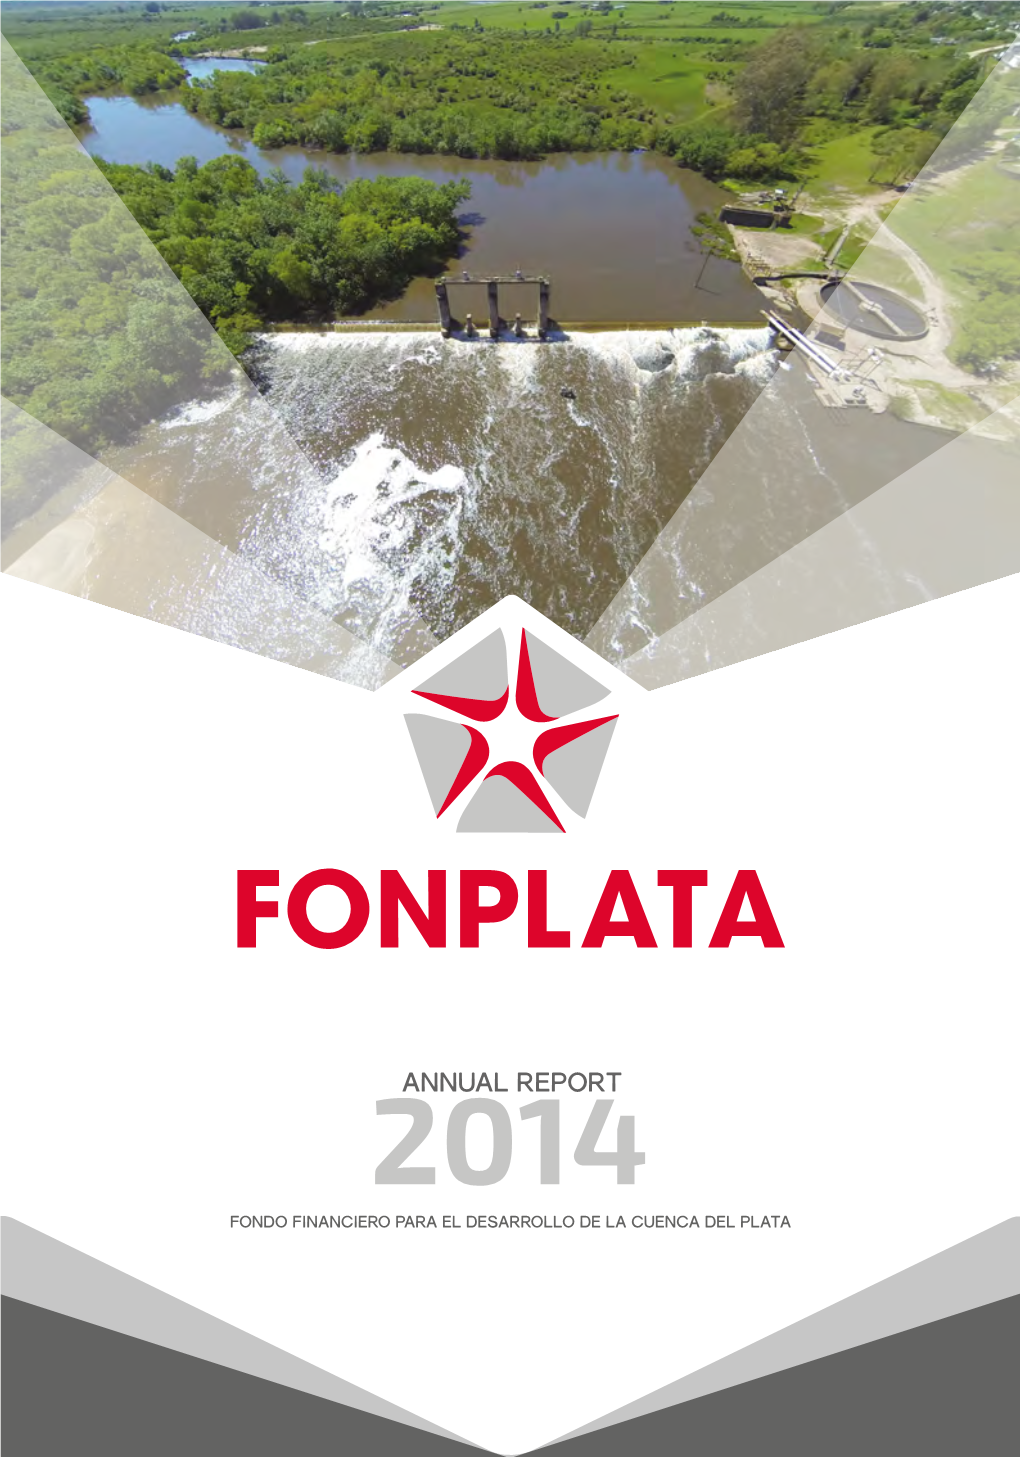 Annual Report 2014 Fondo Financiero Para El Desarrollo De La Cuenca Del Plata Fondo Financiero Para El Desarrollo De La Cuenca Del Plata